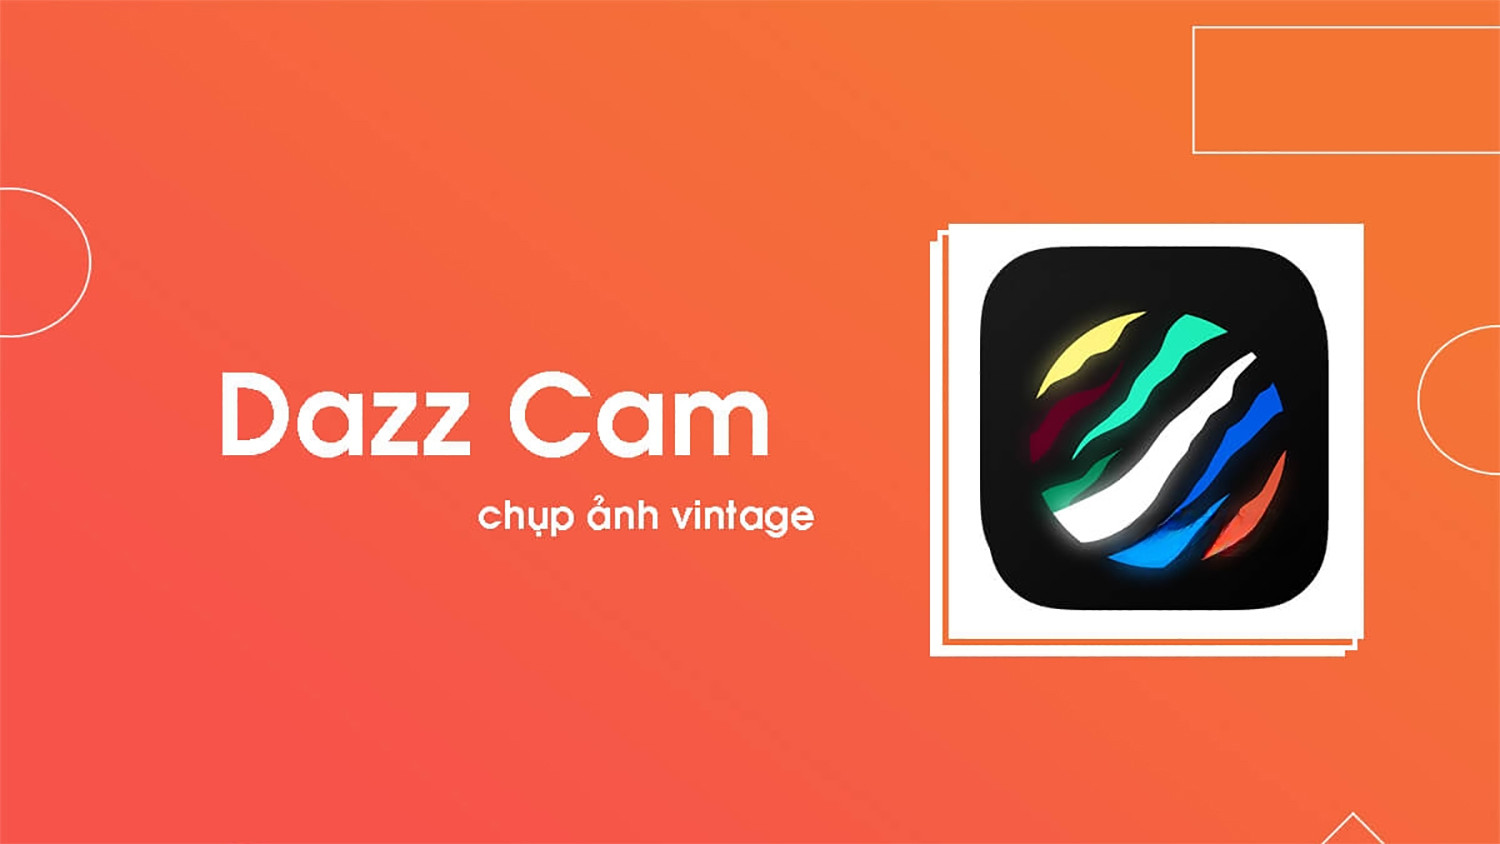 Dazz Cam với camera mang vibe cổ điển